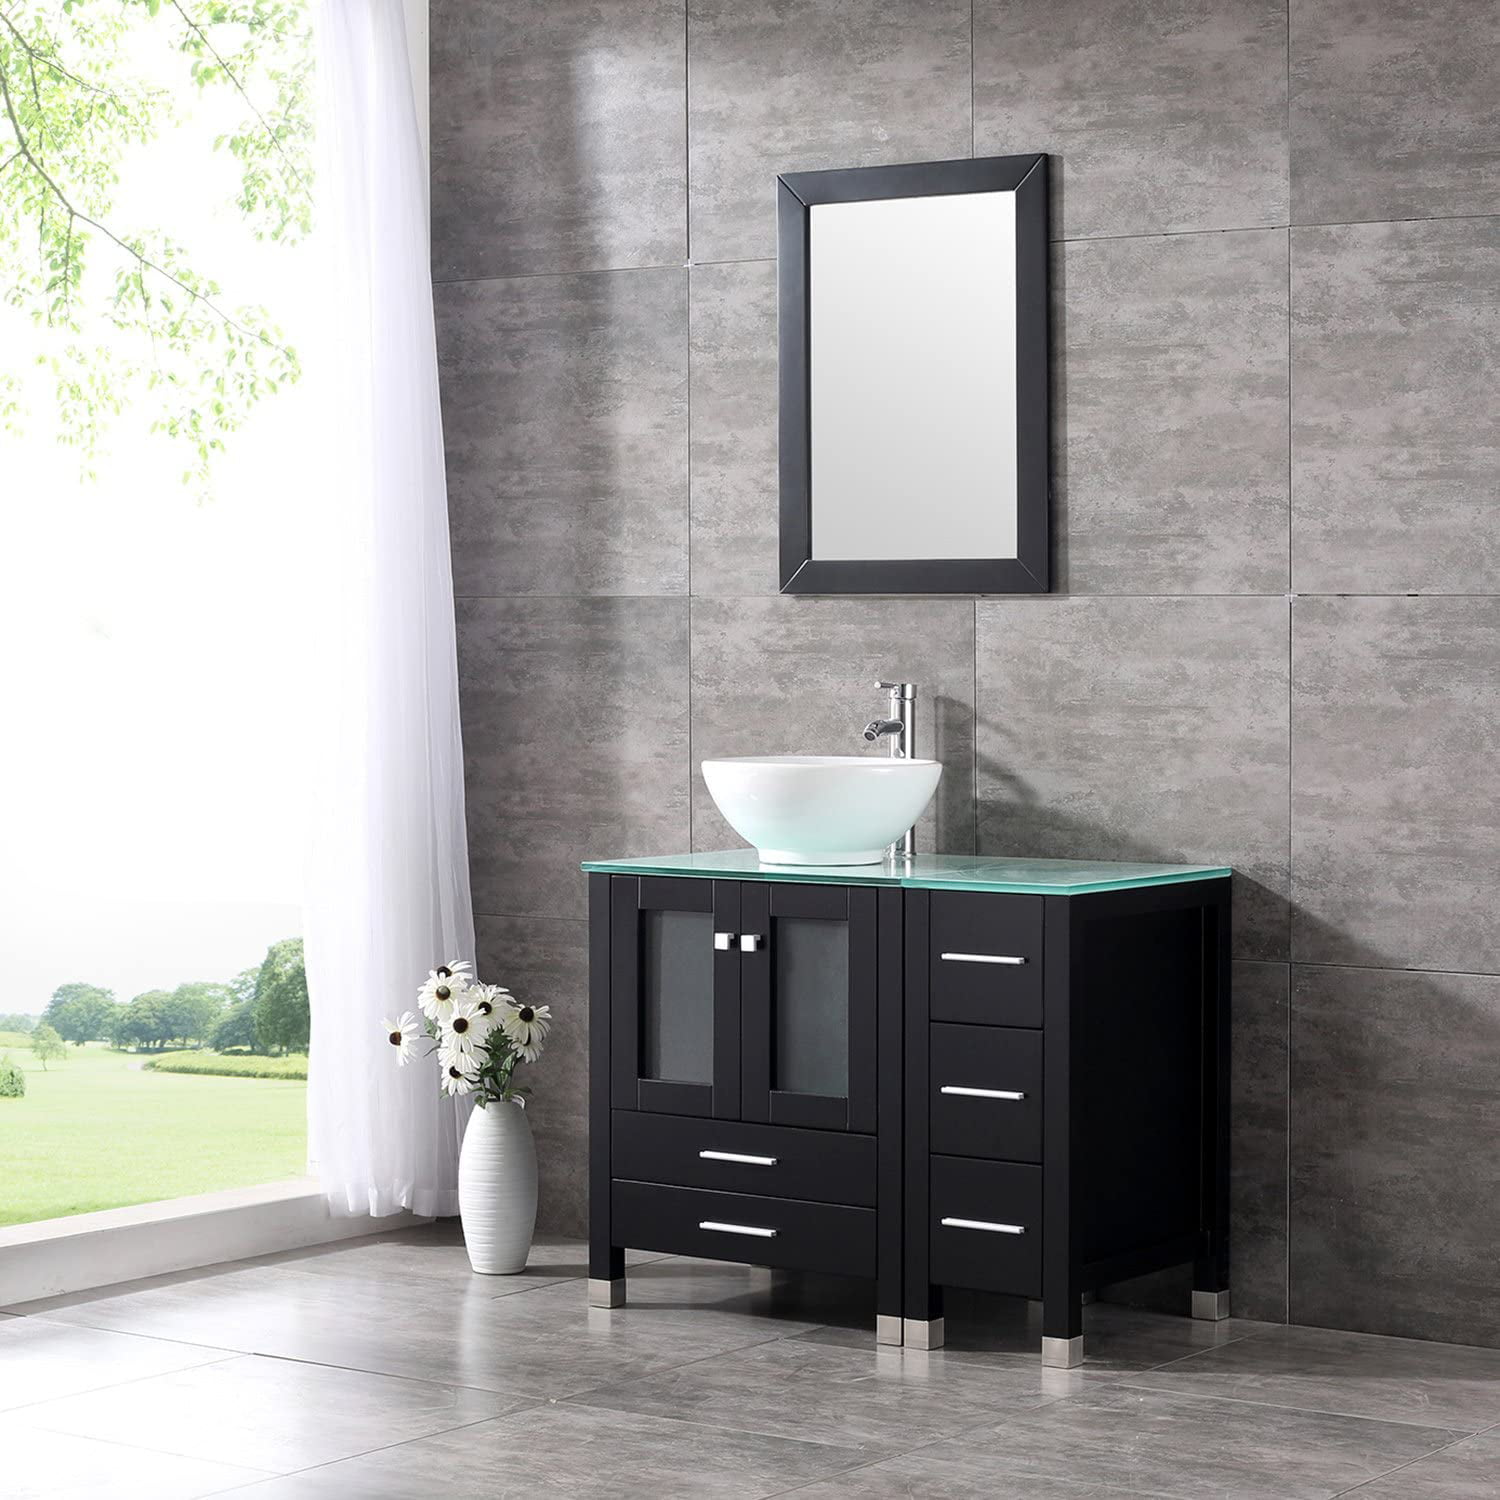 Wonline 36” Modern Wood Bathroom Vanity Cabinet White Round Ceramic